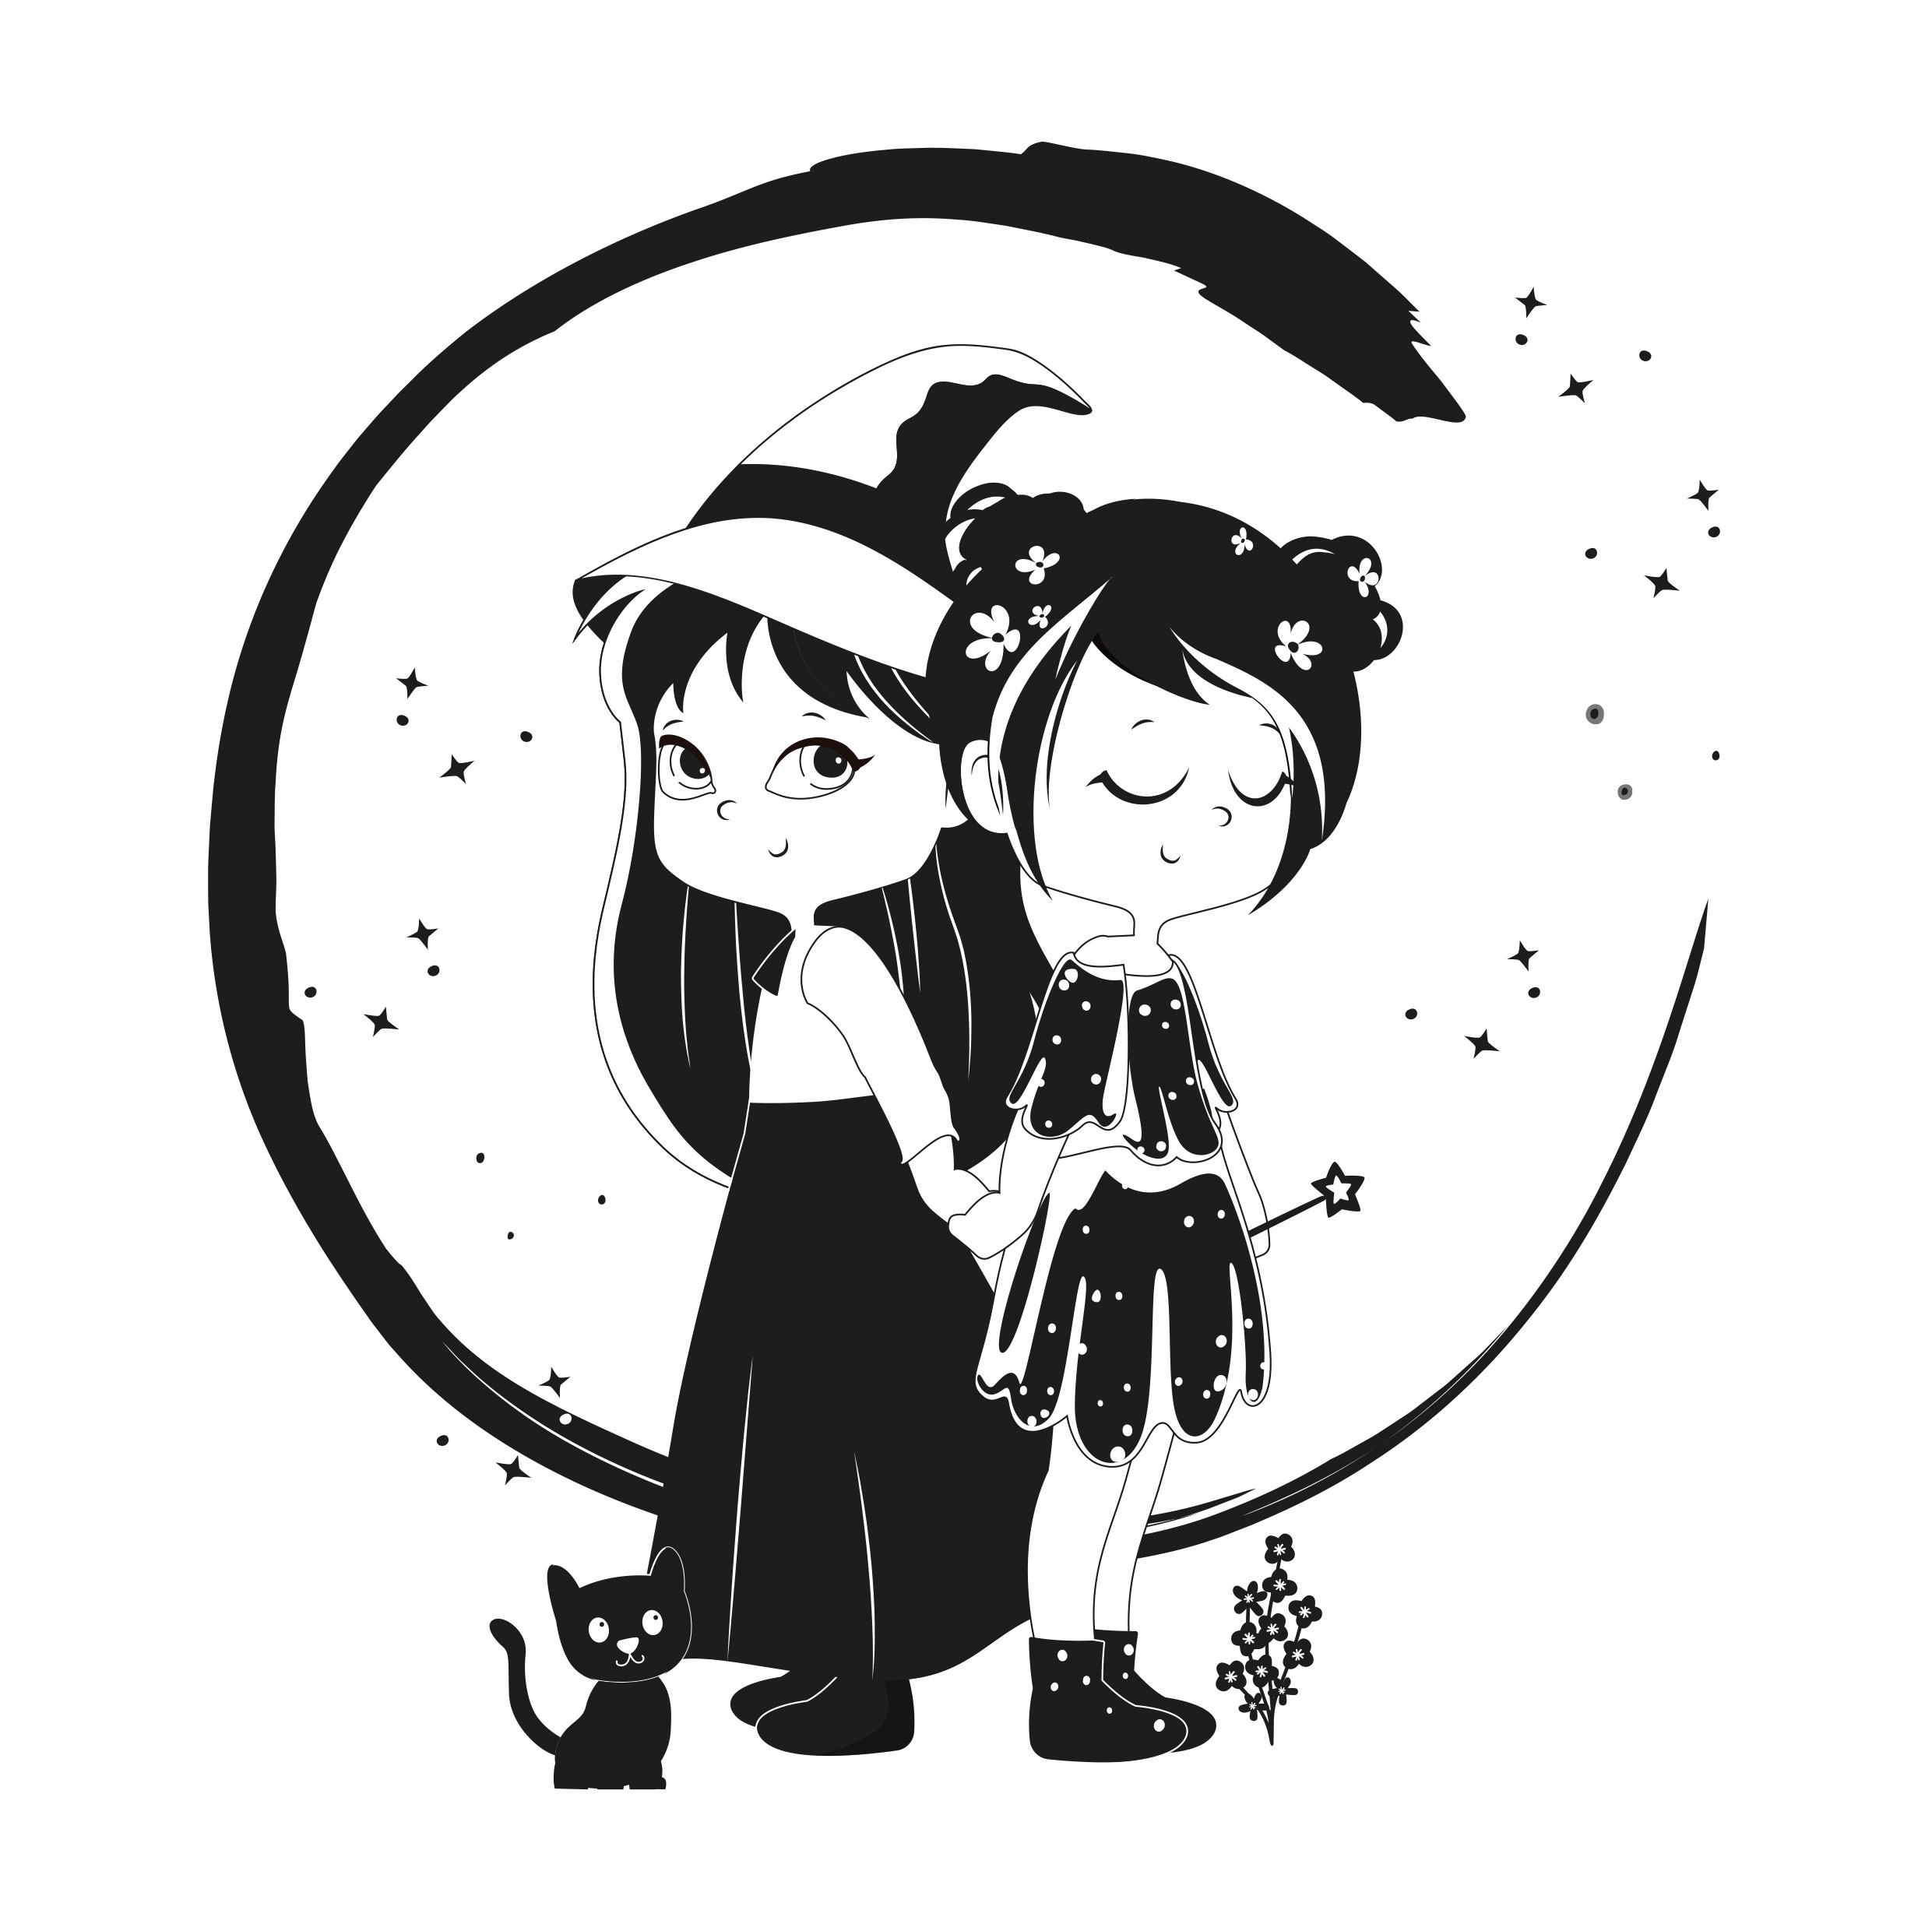 Les énergies d'amour d'Adélaïde, illustration du logo en noir et blanc, deux petites filles, une sorcière et une fée qui se tiennent de dos.